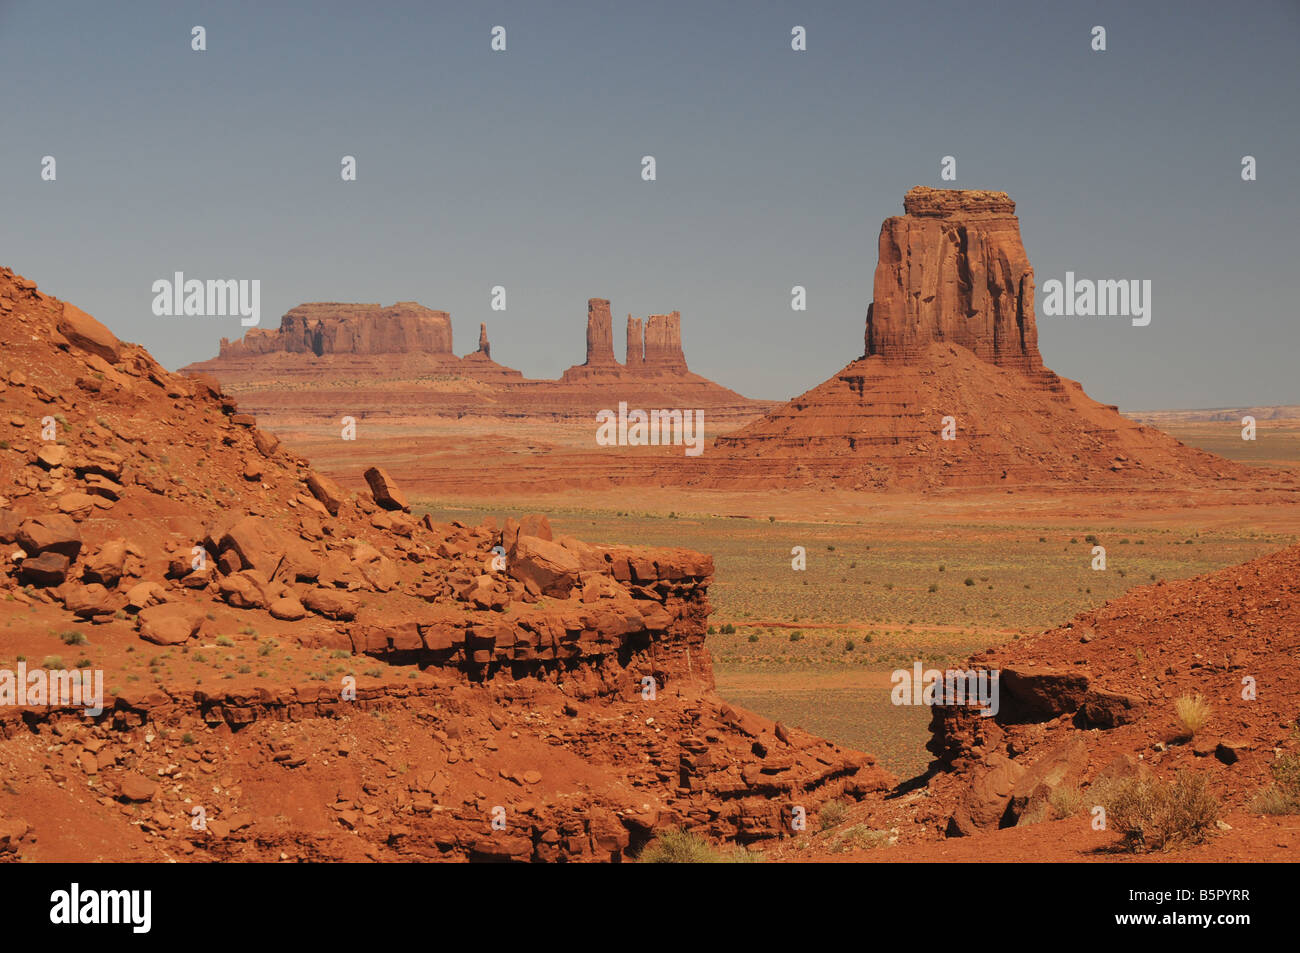 Un chemin de terre mène à travers le paysage distinct de Monument Valley, Arizona, USA. Banque D'Images